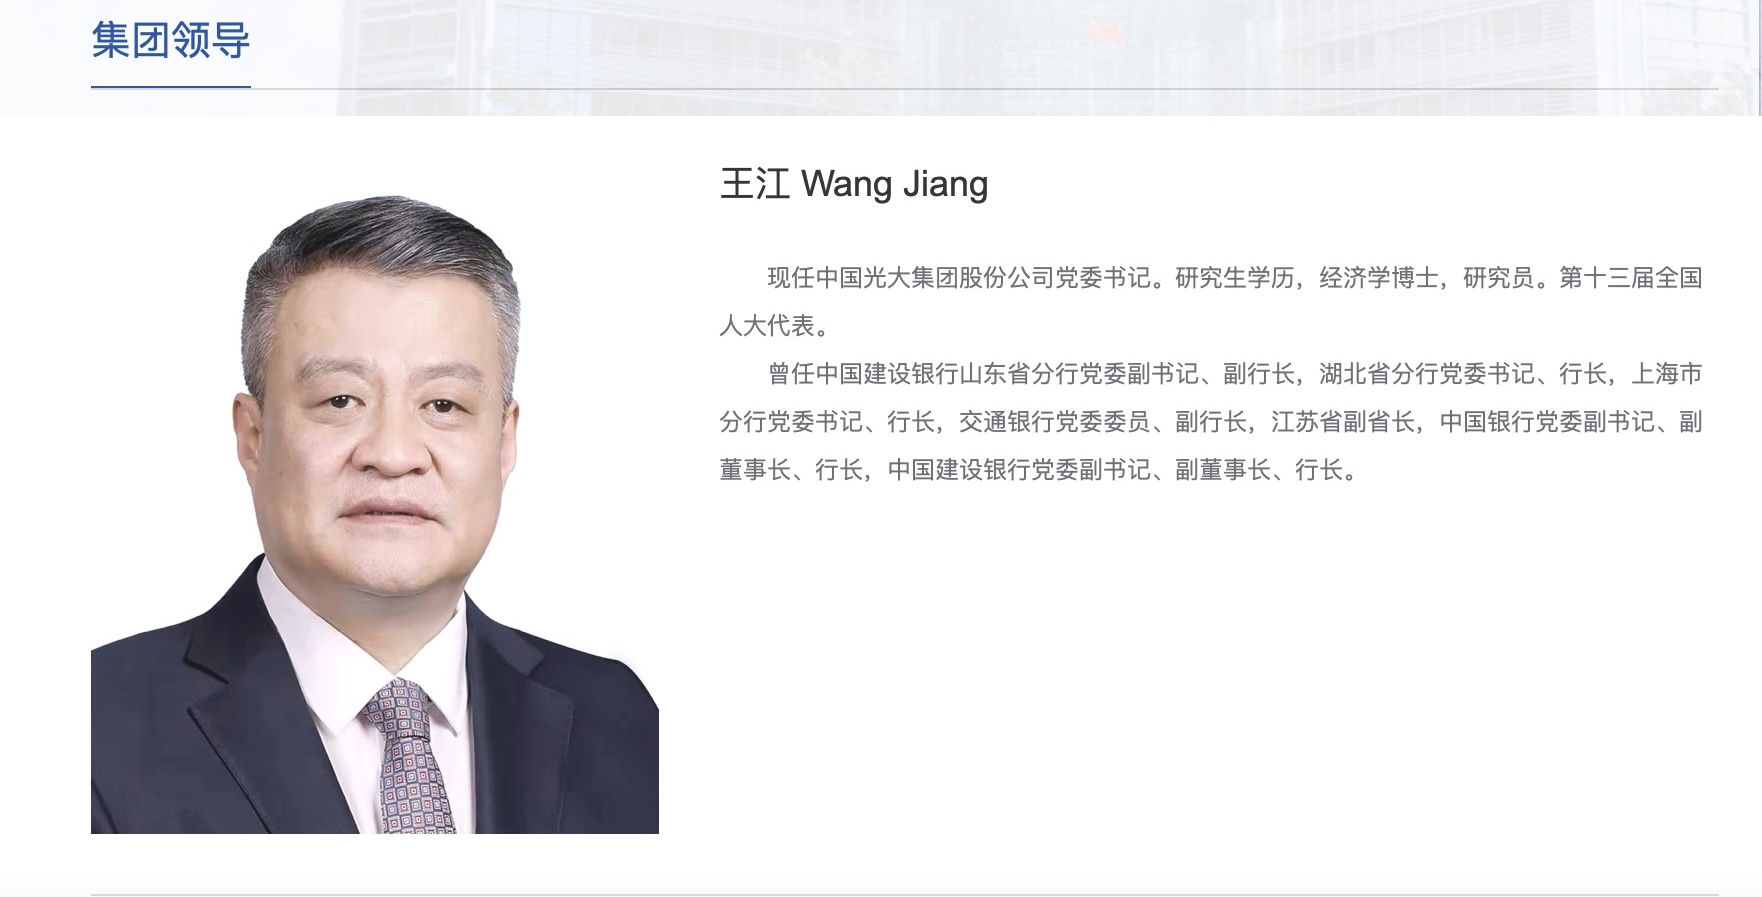 “光大集团领导层更迭：现年59岁建行行长王江接任党委书记